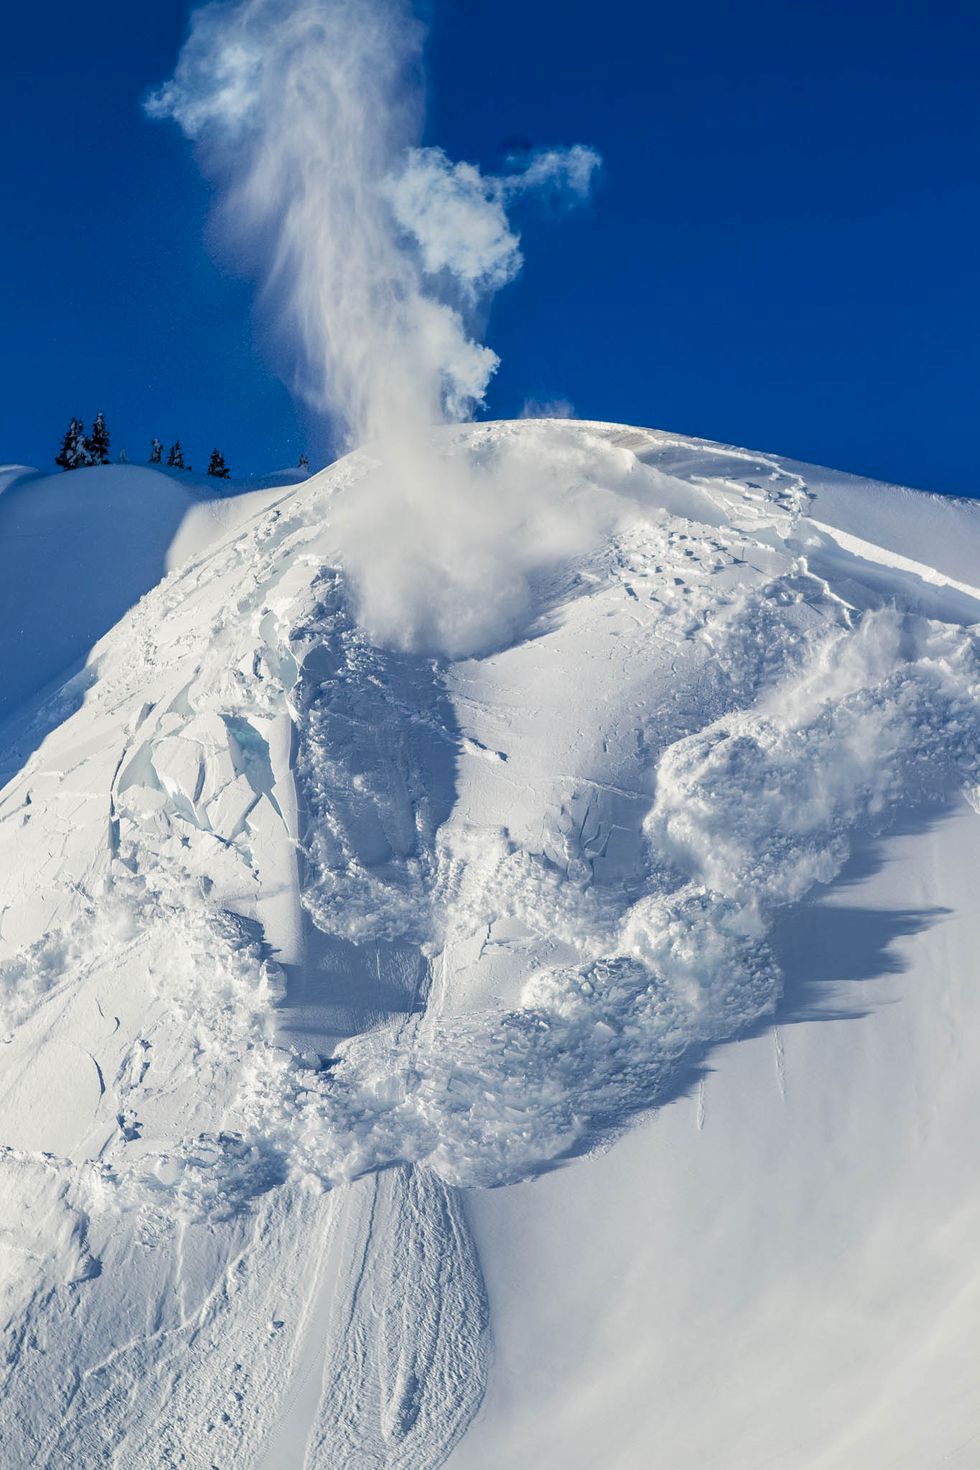 Följ med skidpatrullen på världens snöigaste skidort